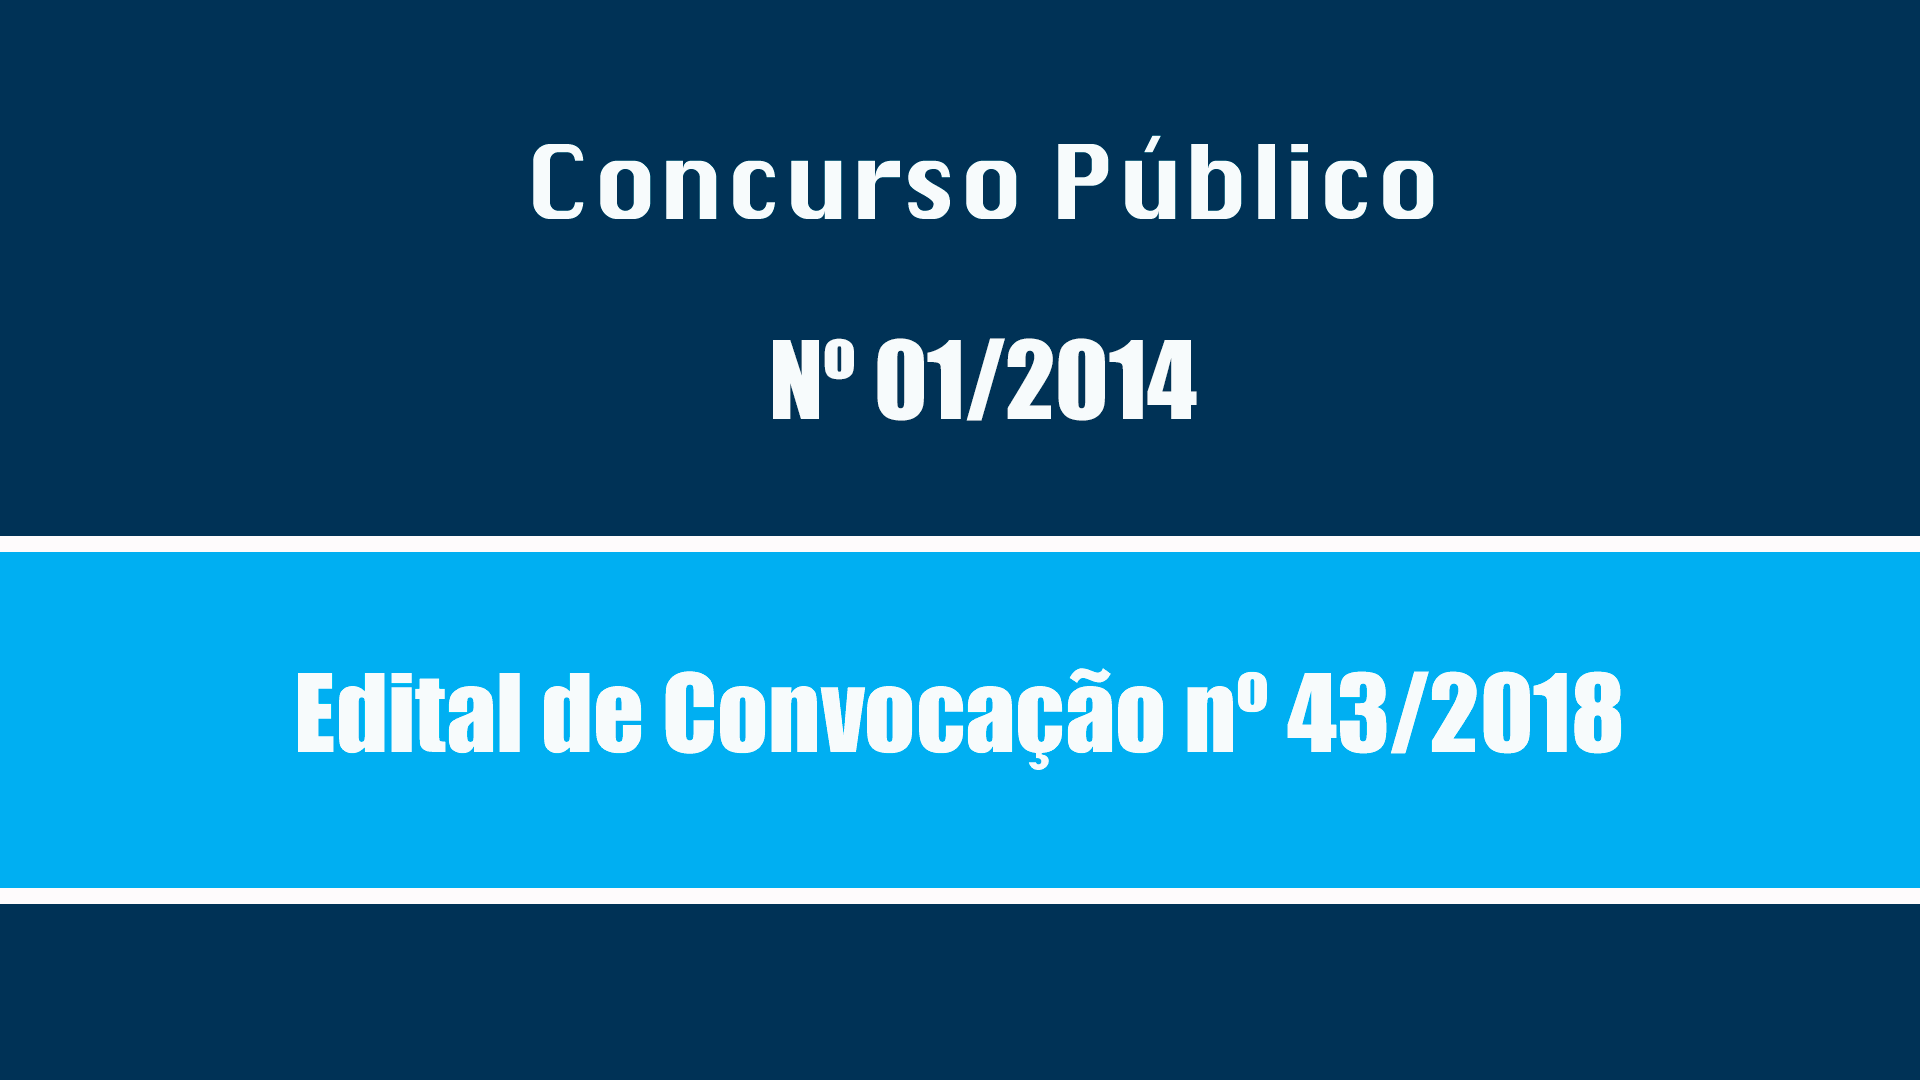 CONC. PÚBLICO Nº 01/2014 - EDITAL DE CONVOCAÇÃO Nº 43/2018